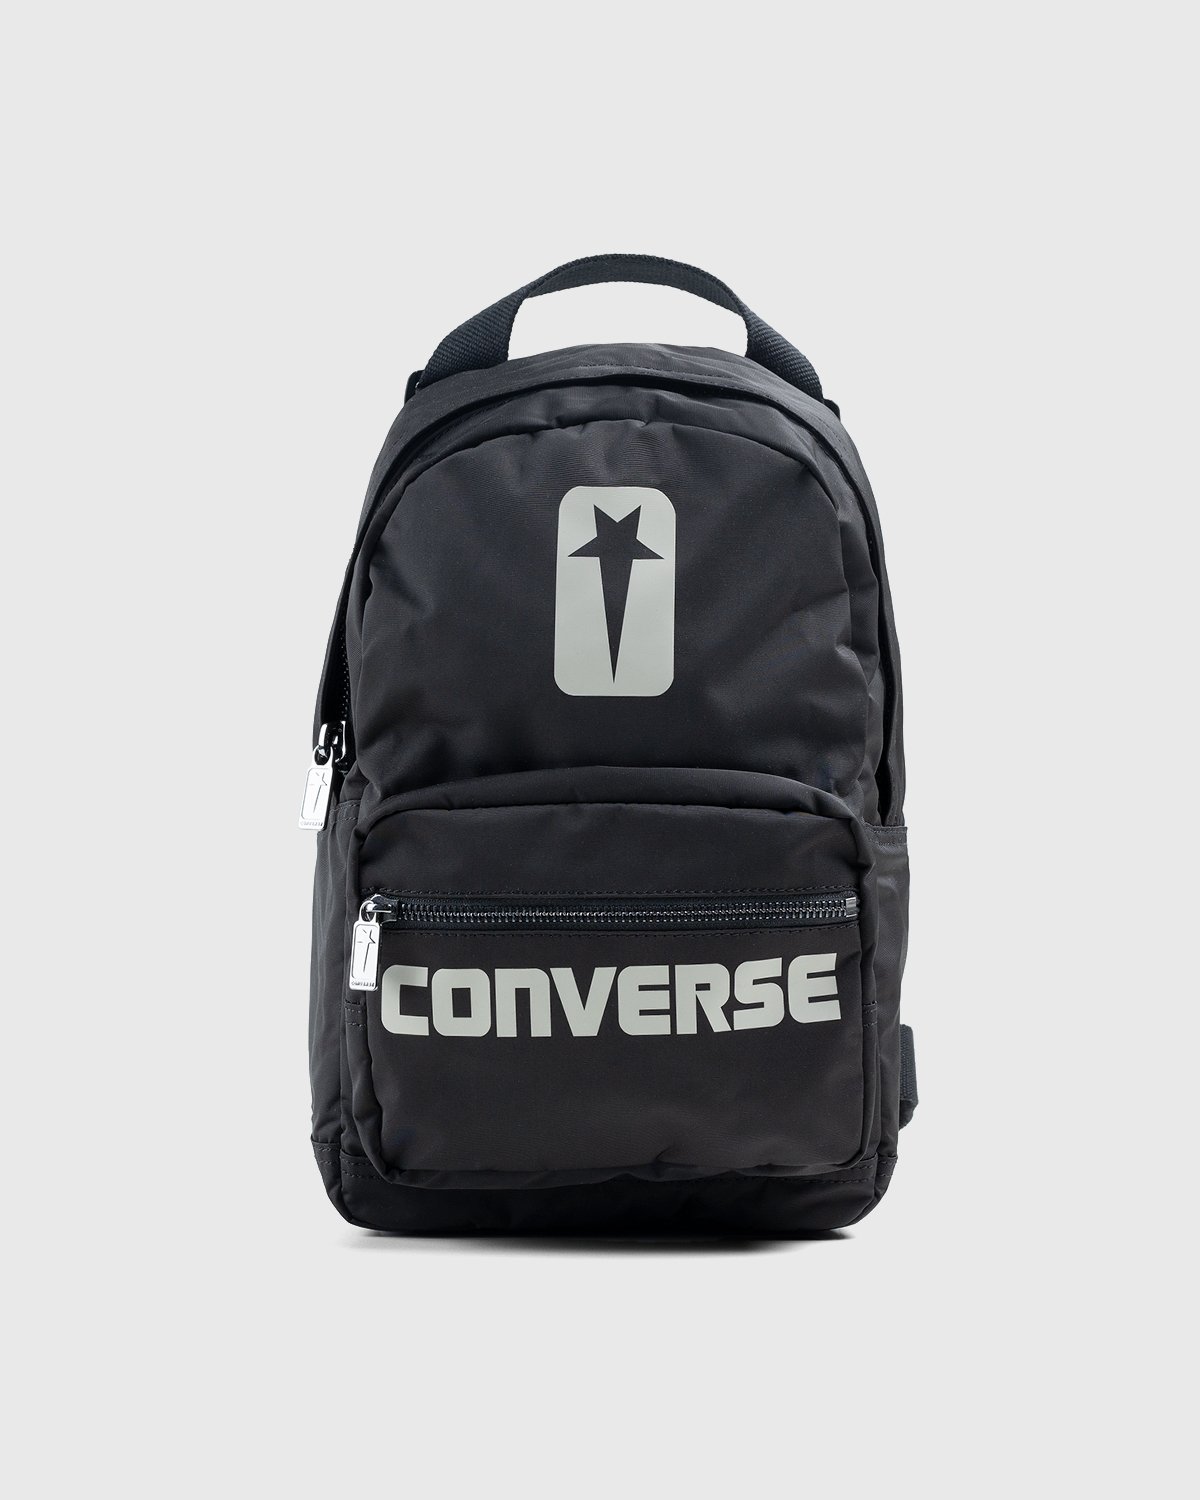 Converse x Rick Owens - DRKSHDW Backpack Black/Pelican - Accessories - Black - Image 1